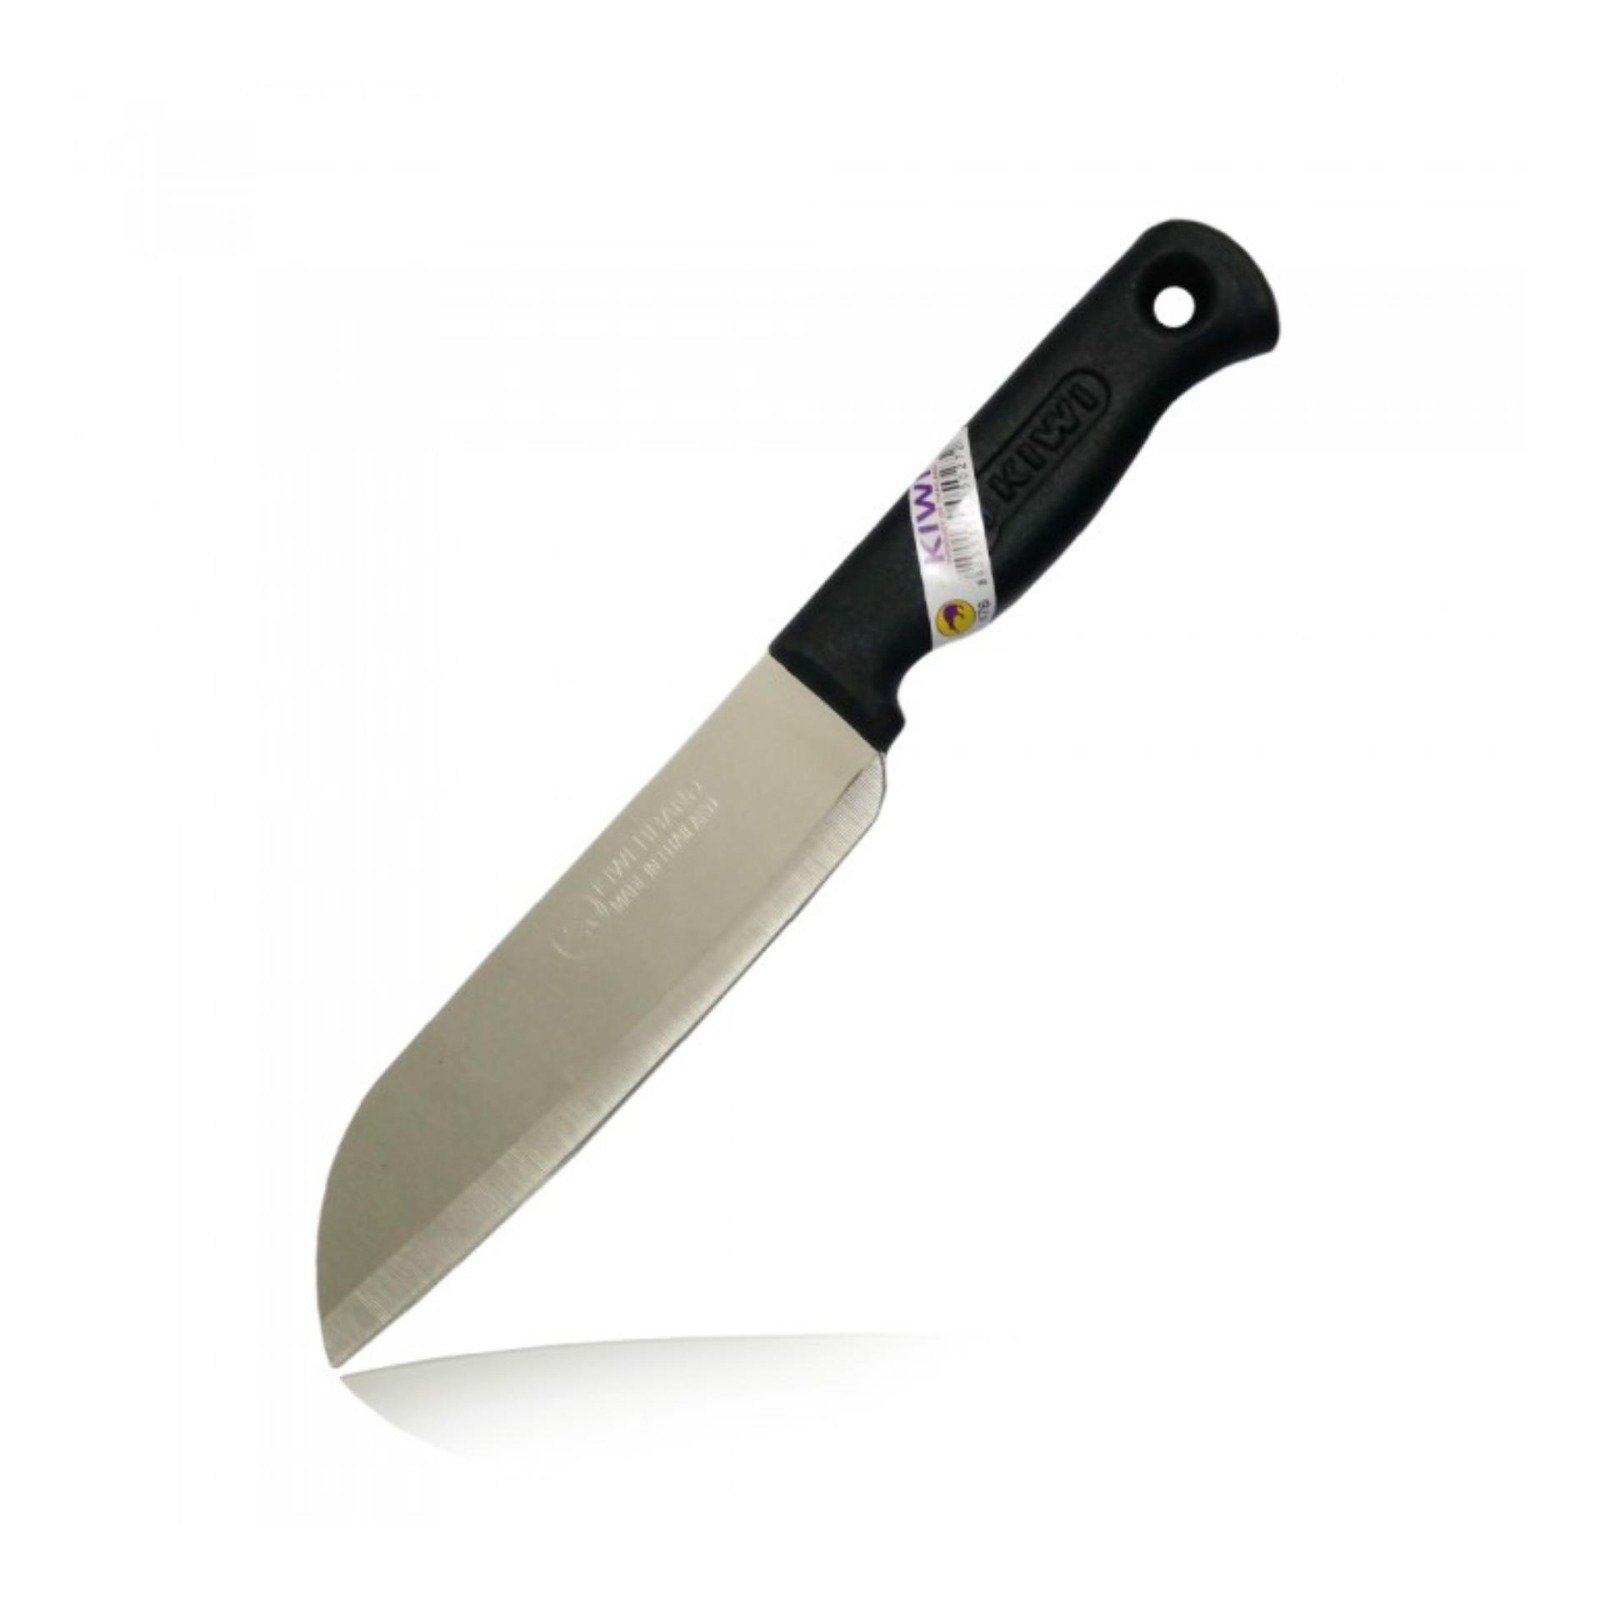 Kiwi knife